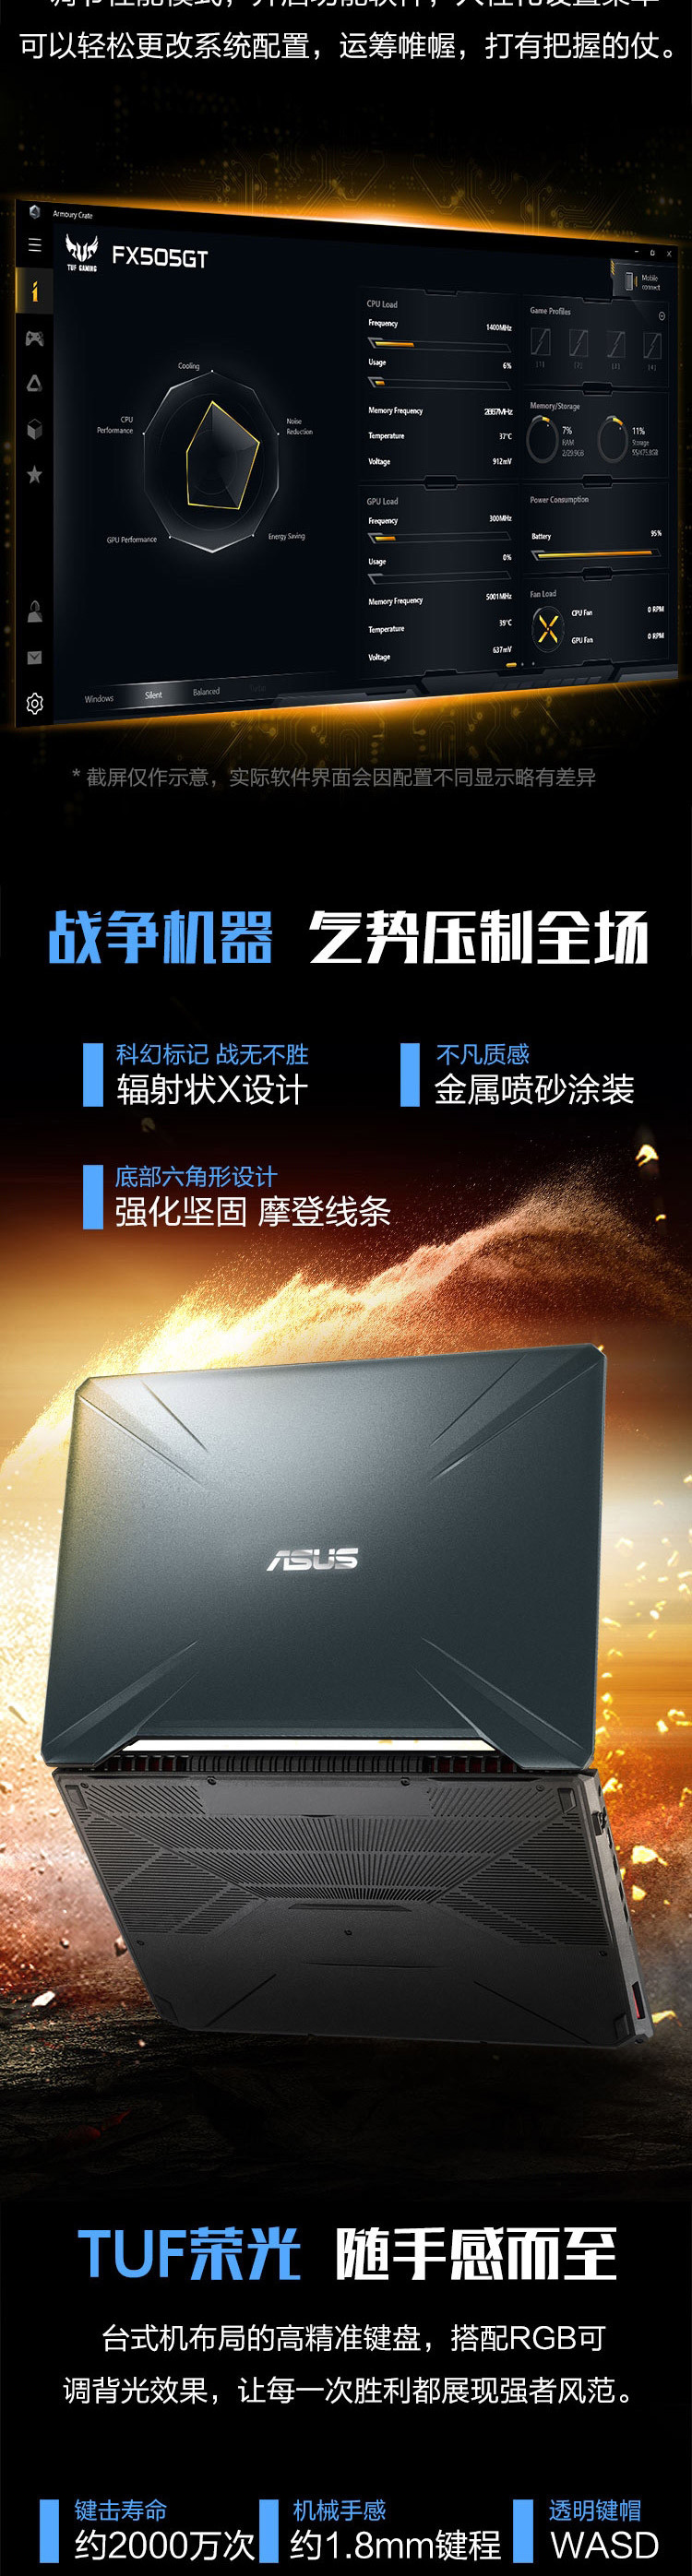 华硕 FX95GT9750 15.6英寸I7笔记本 1TB硬盘 8G内存 4G独显